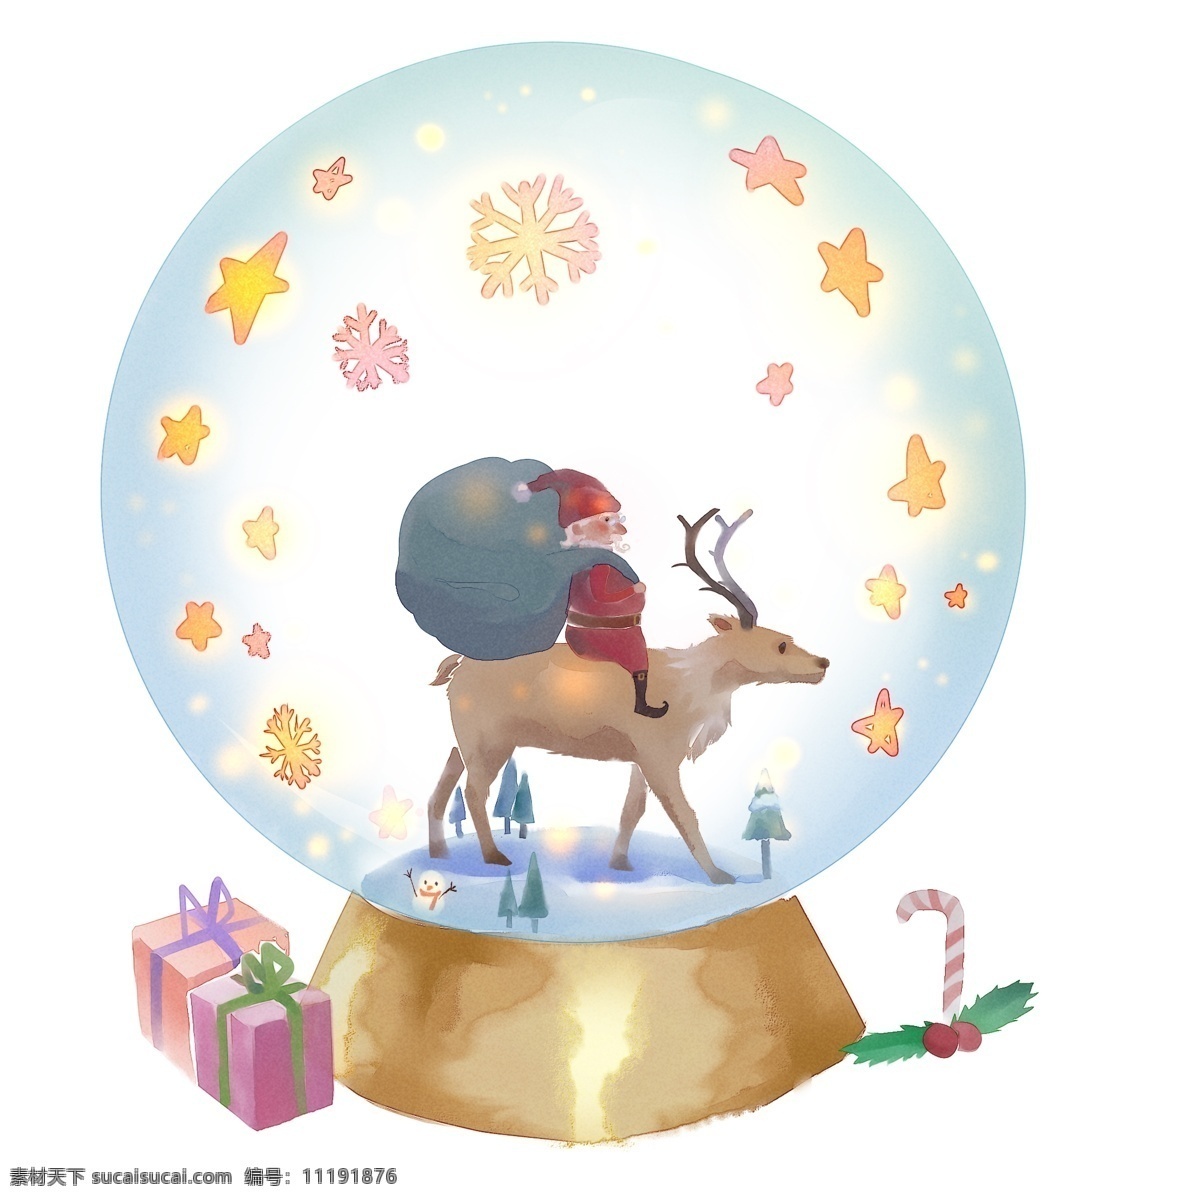 水晶球 里 圣诞节 水彩 卡通 手绘 亮晶晶 麋鹿 圣诞老人 包裹 雪花飘零 圣诞手杖 礼物纷飞 圣诞树 蓝色 咖啡色